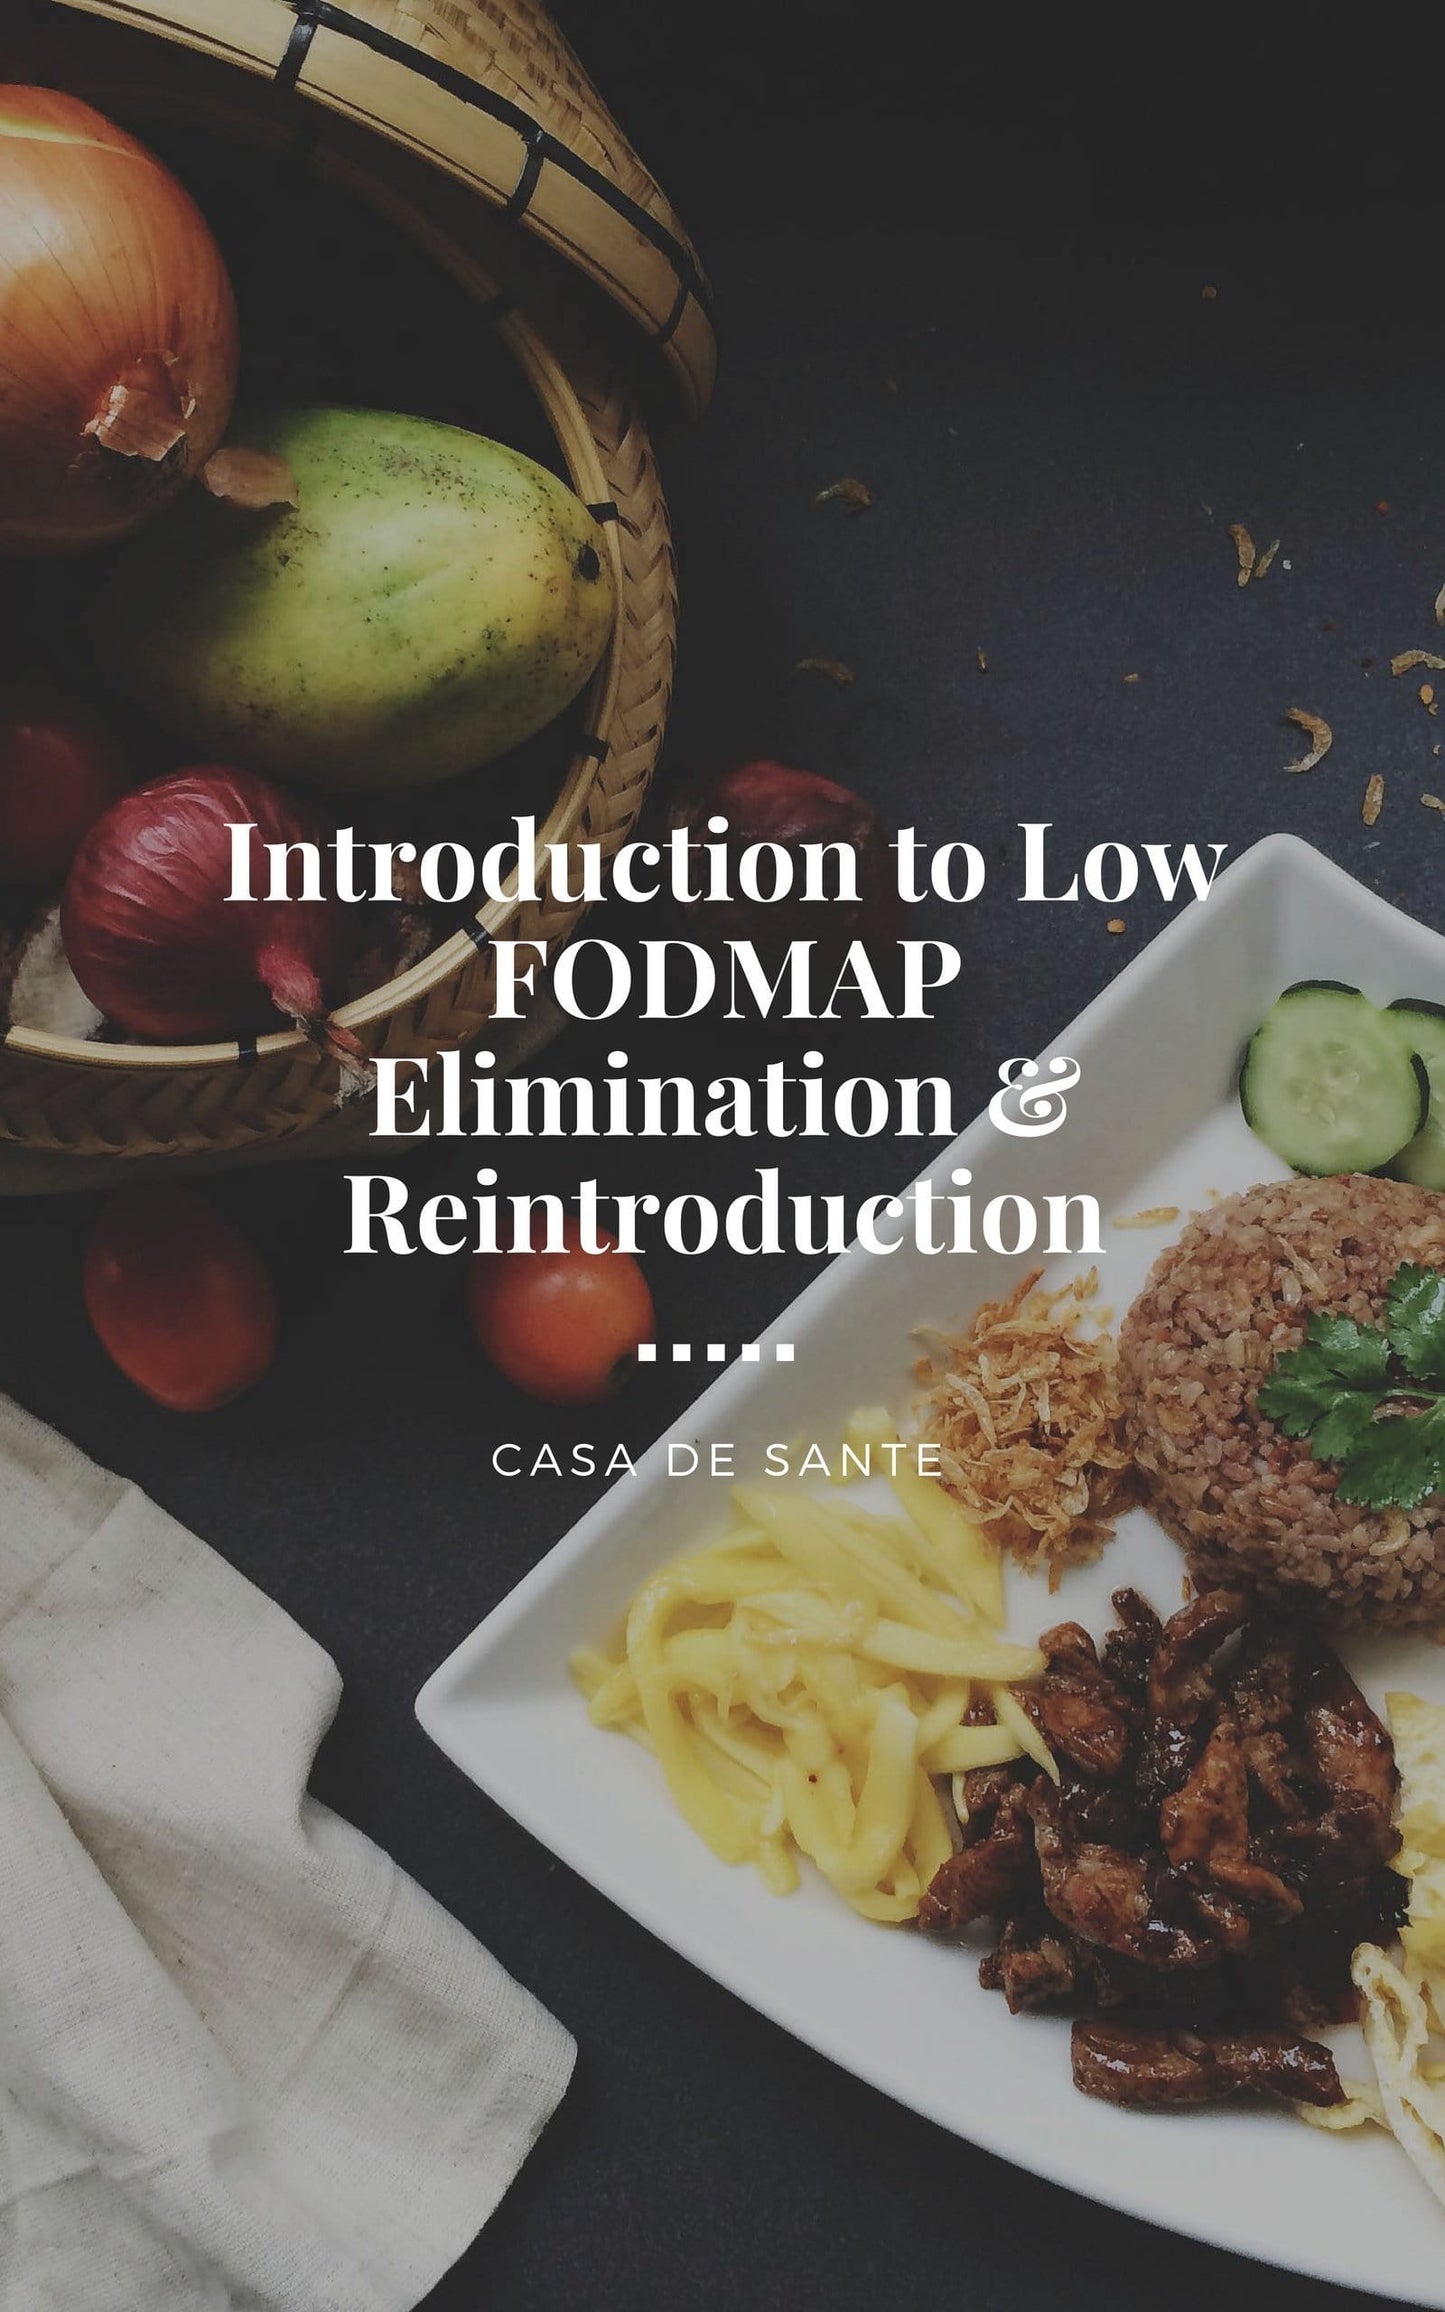 Introduction to Low FODMAP Elimination & Reintroduction-casa de sante